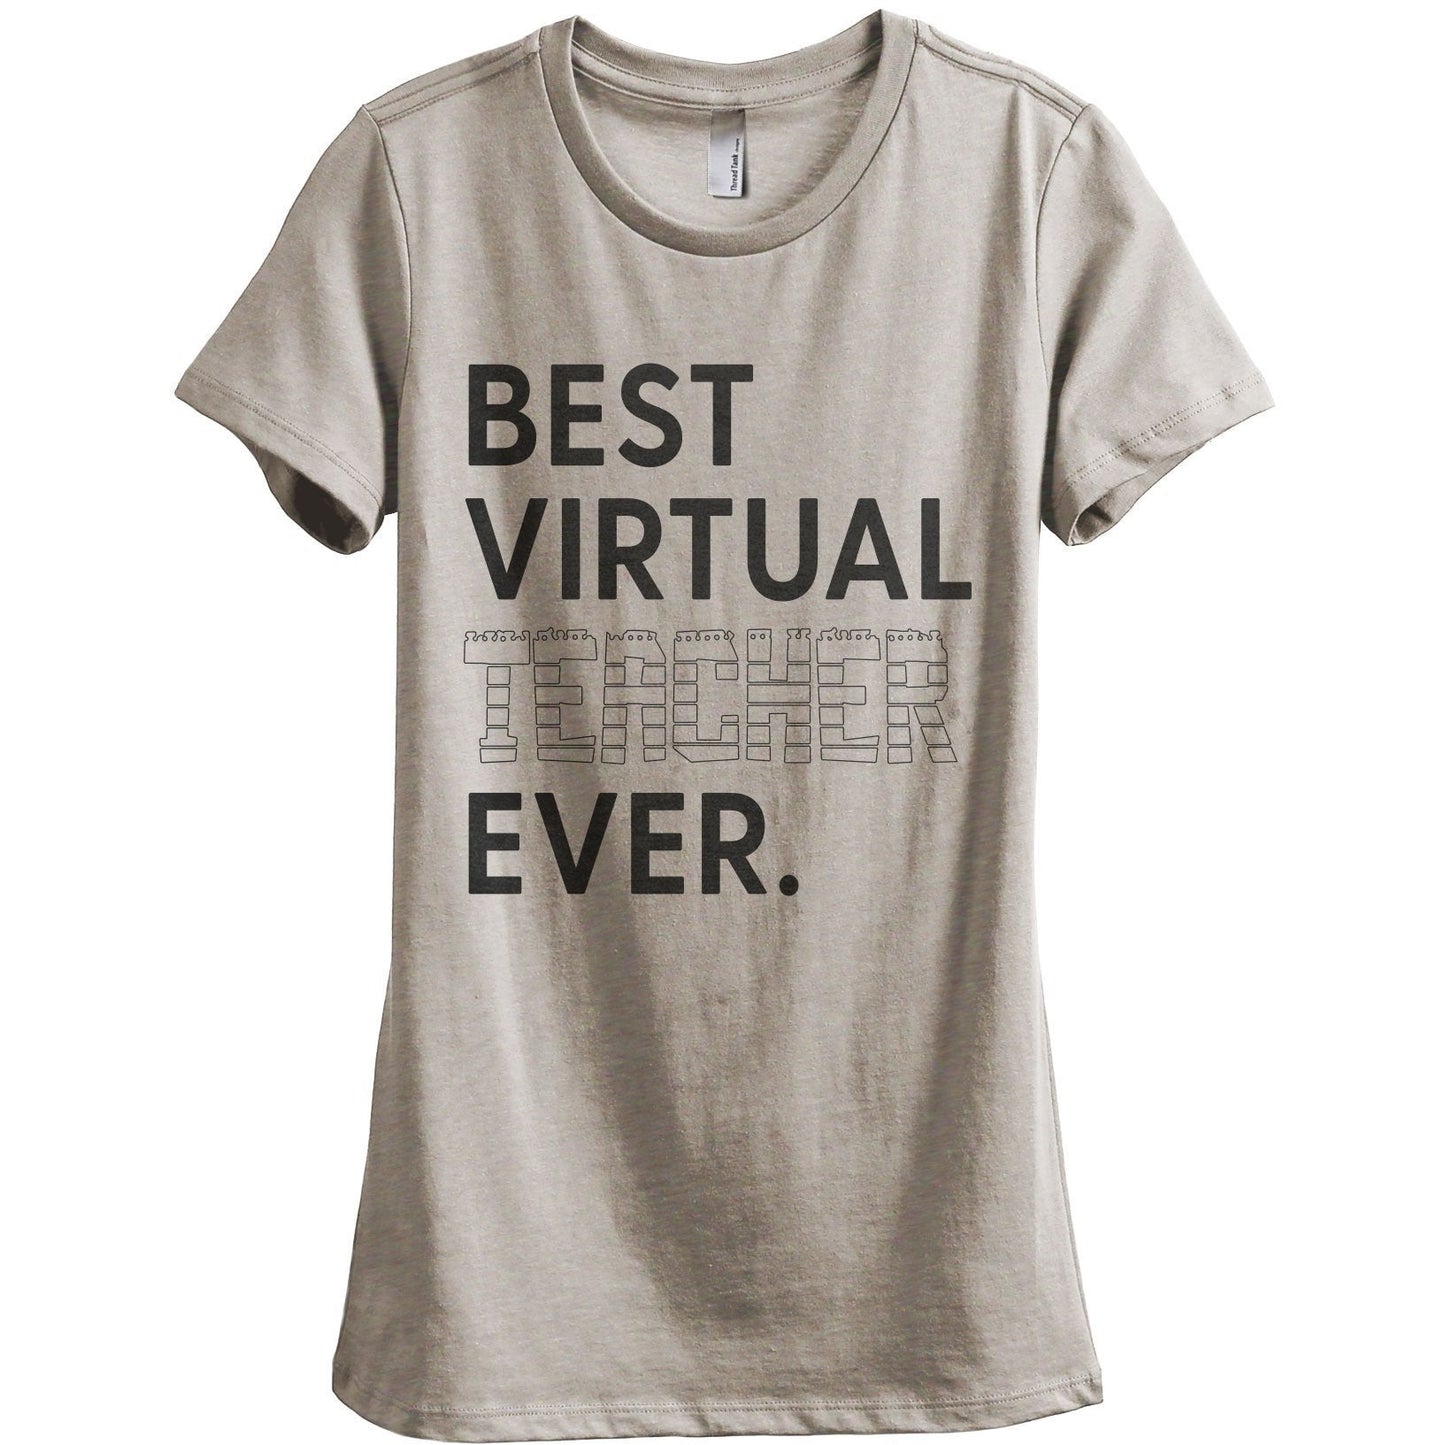 Best Virtual Teacher Ever Women's Relaxed Crewneck T-Shirt Top Tee Heather Tan